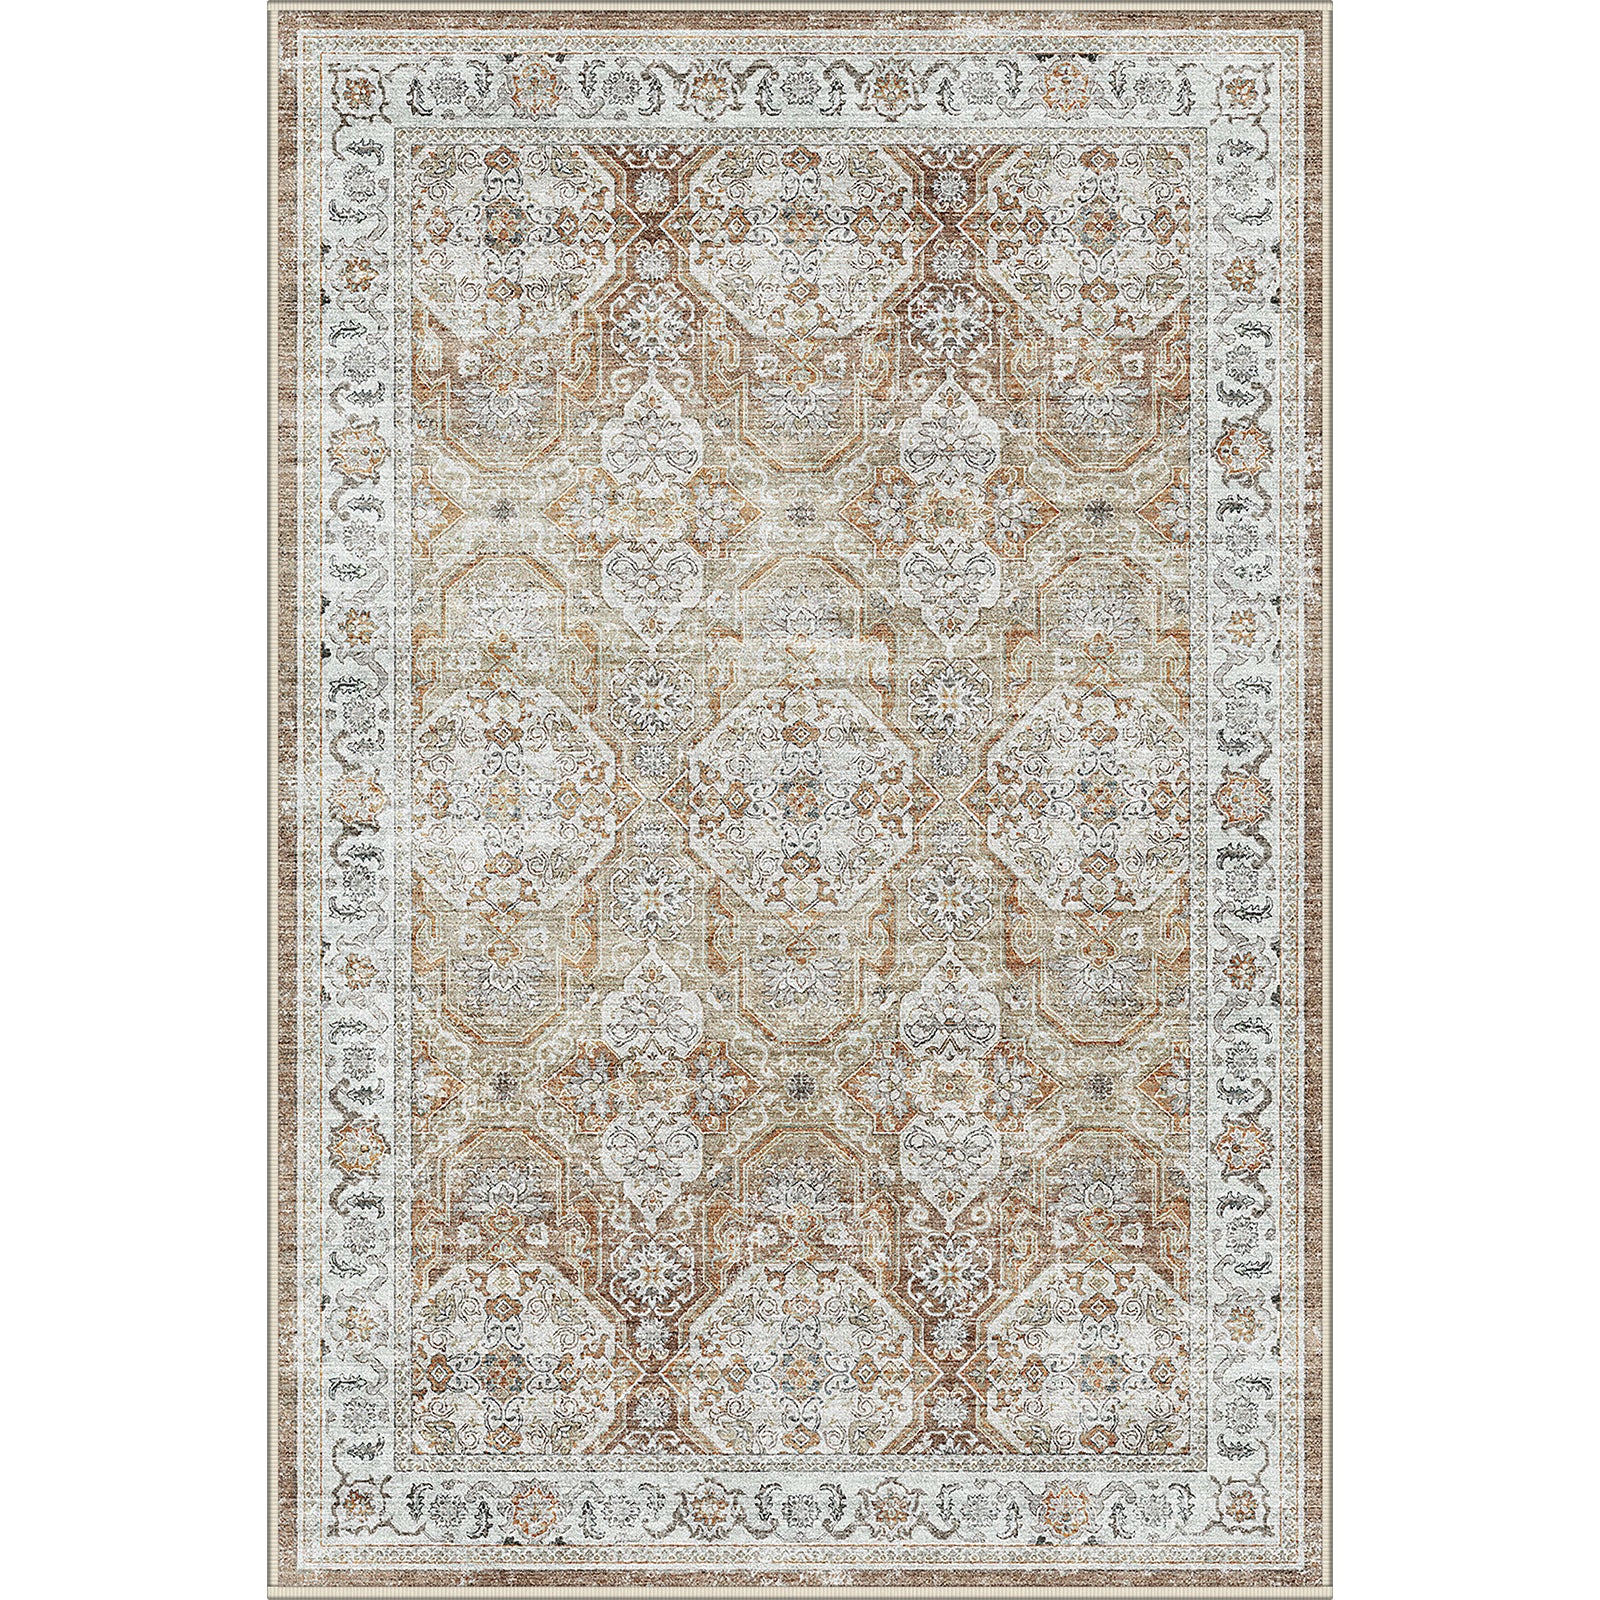 Bohemian rug design